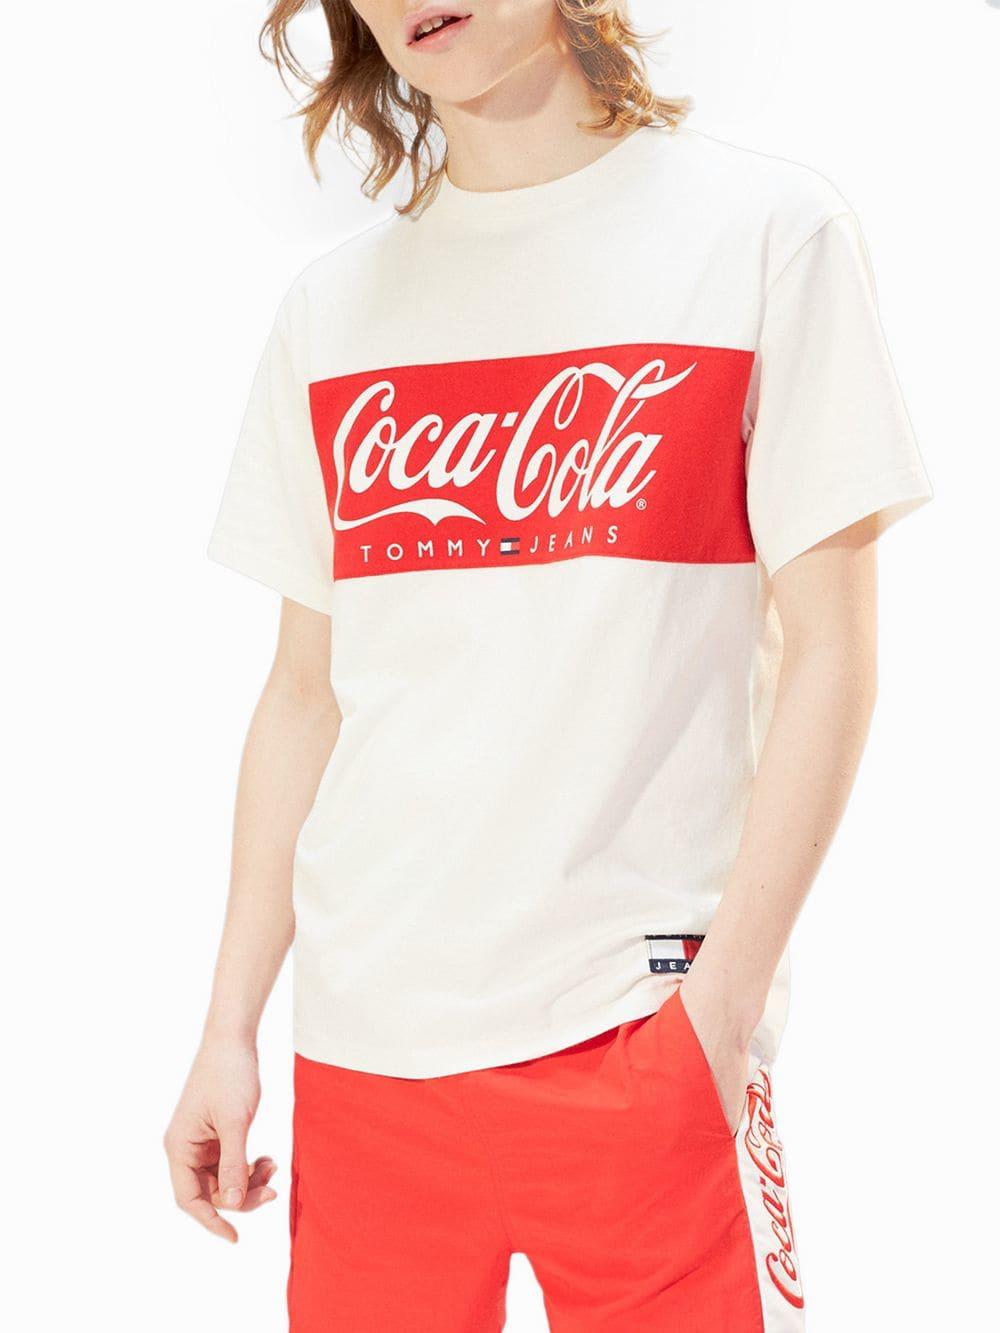 tommy hilfiger coca cola shorts